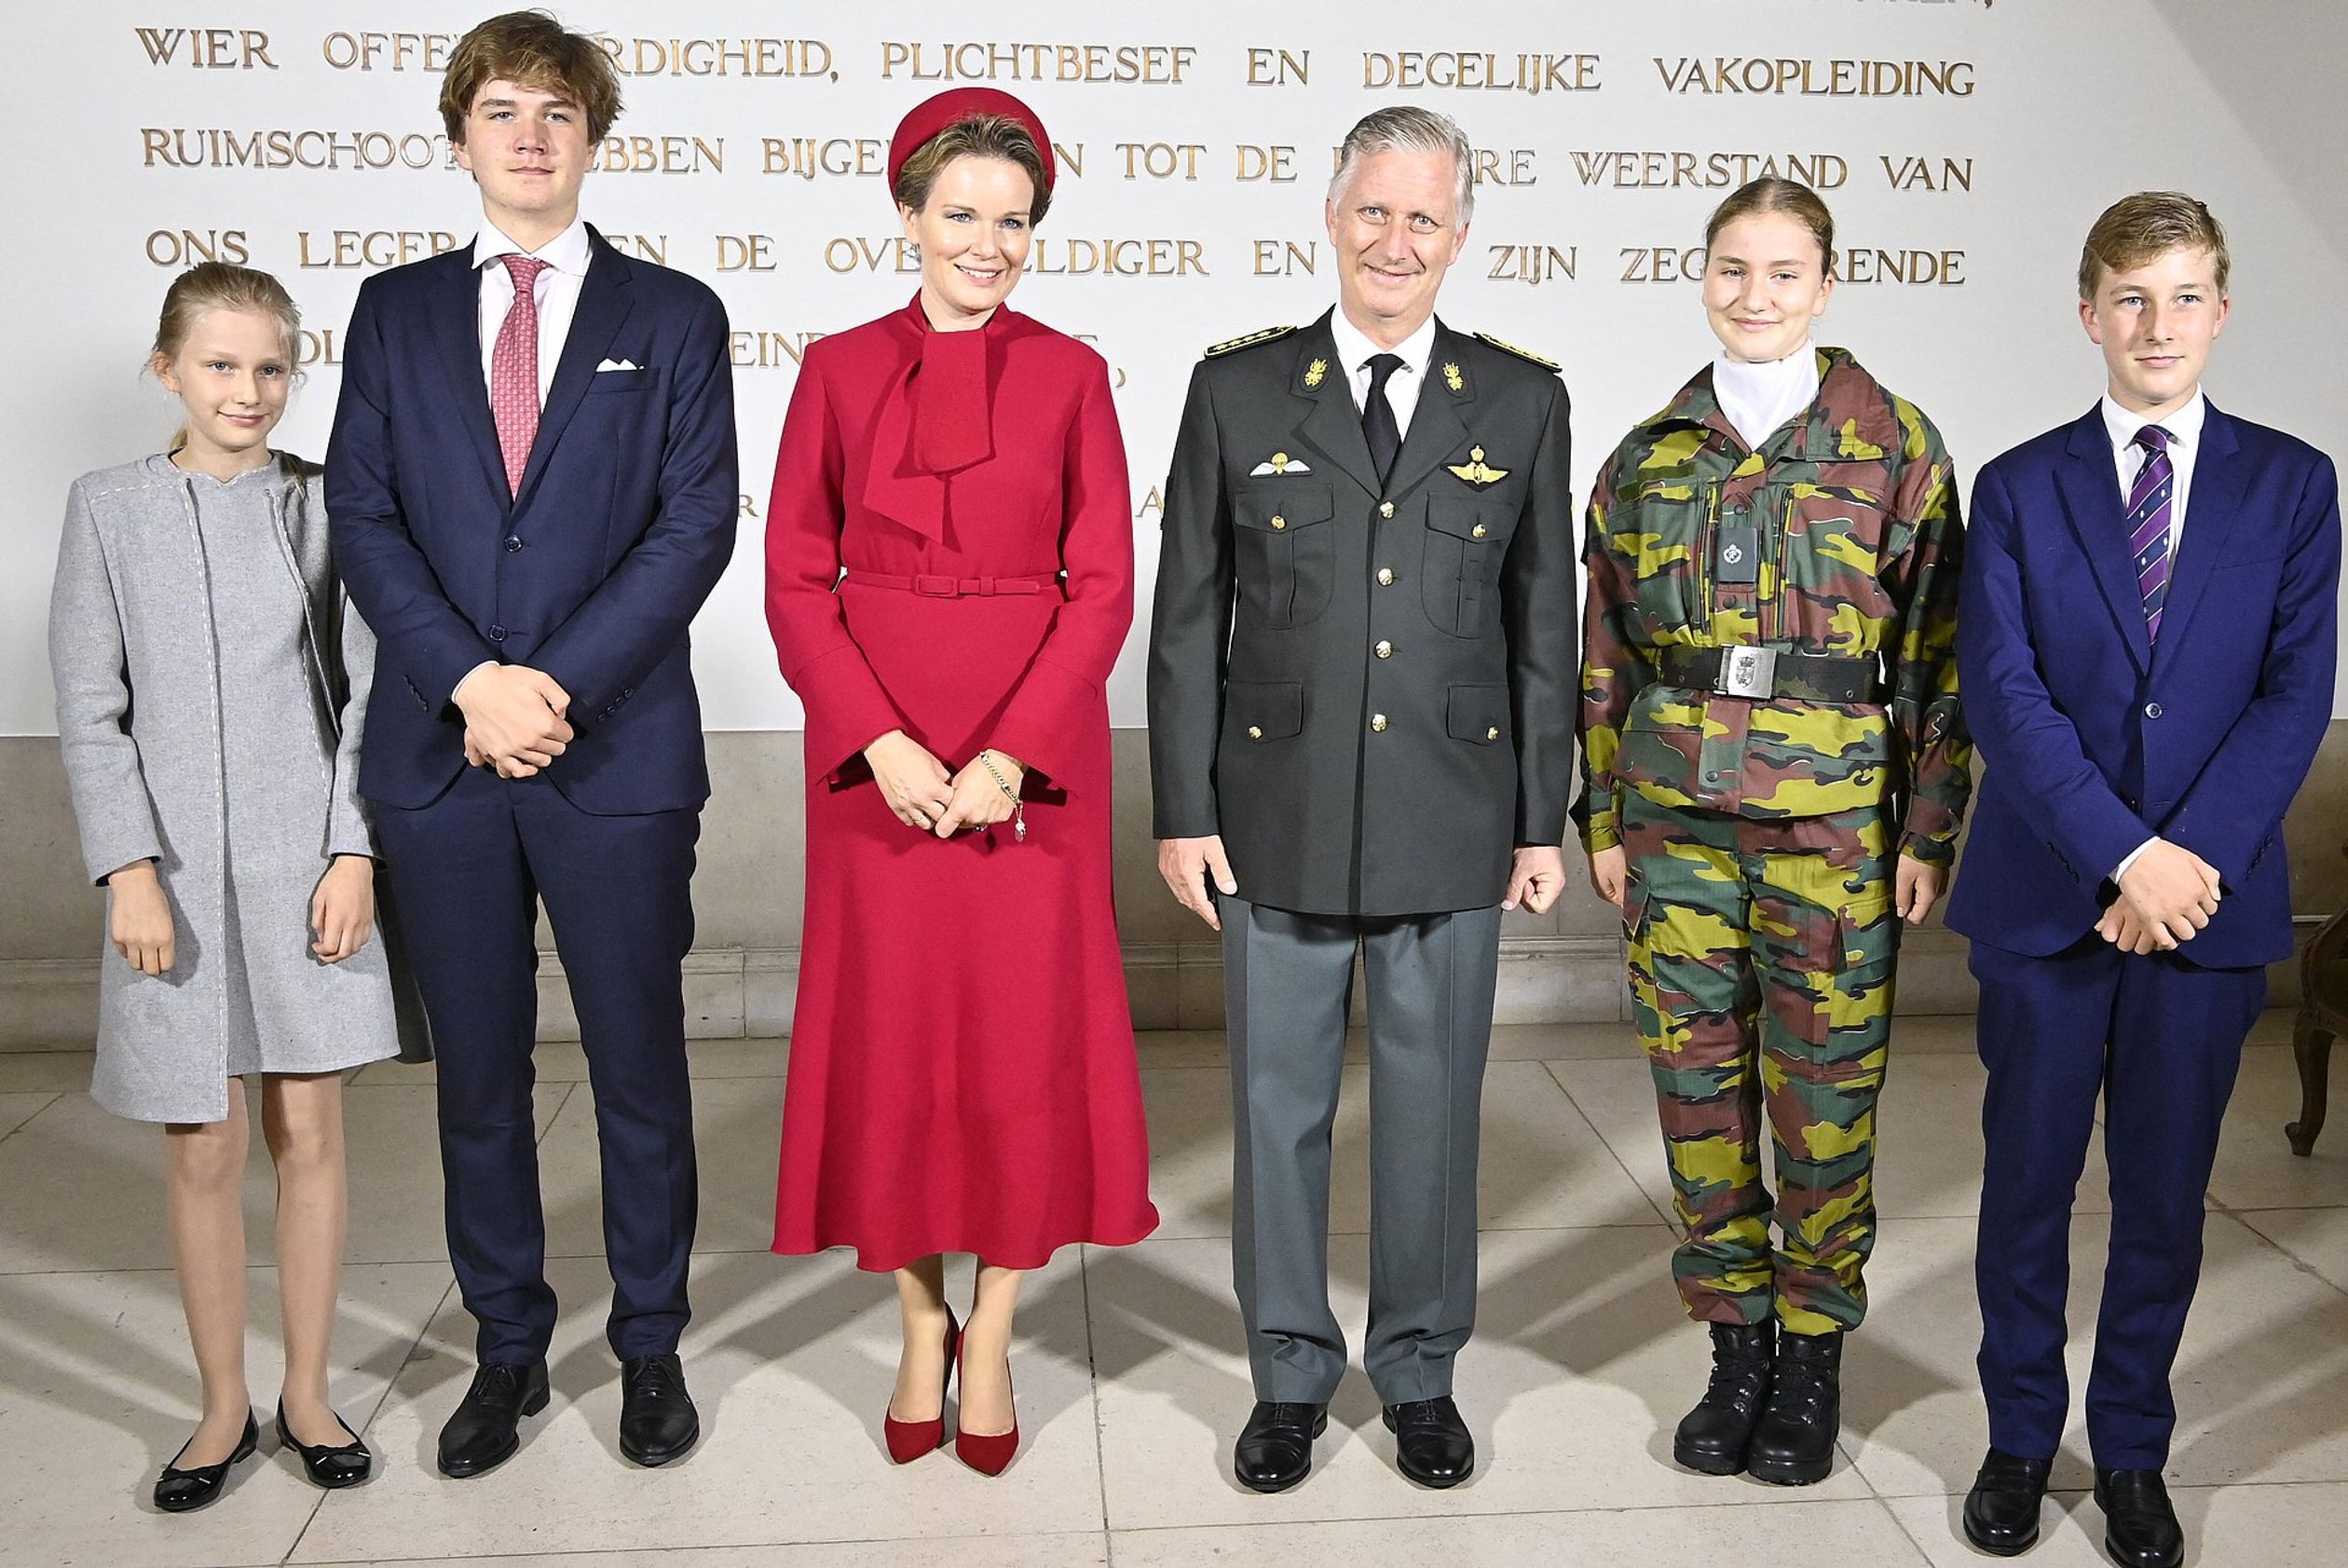 Het koninklijk gezin poseert tijdens de opening van het academisch jaar. Prinses Elisabeth volgt dit